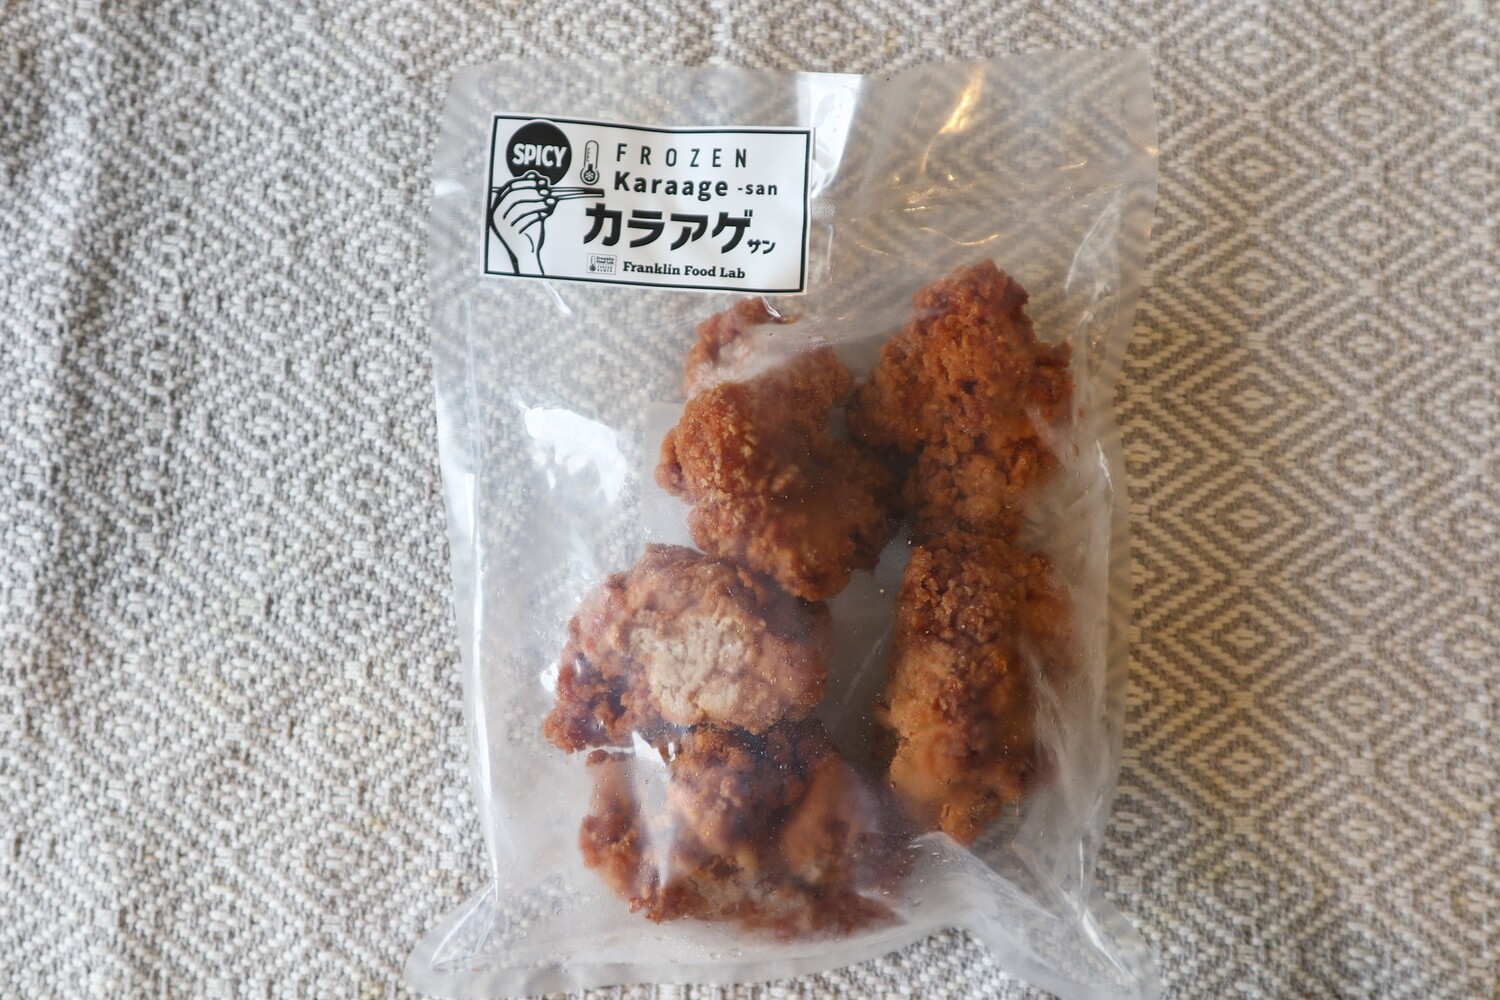 Karaage san(spicy)